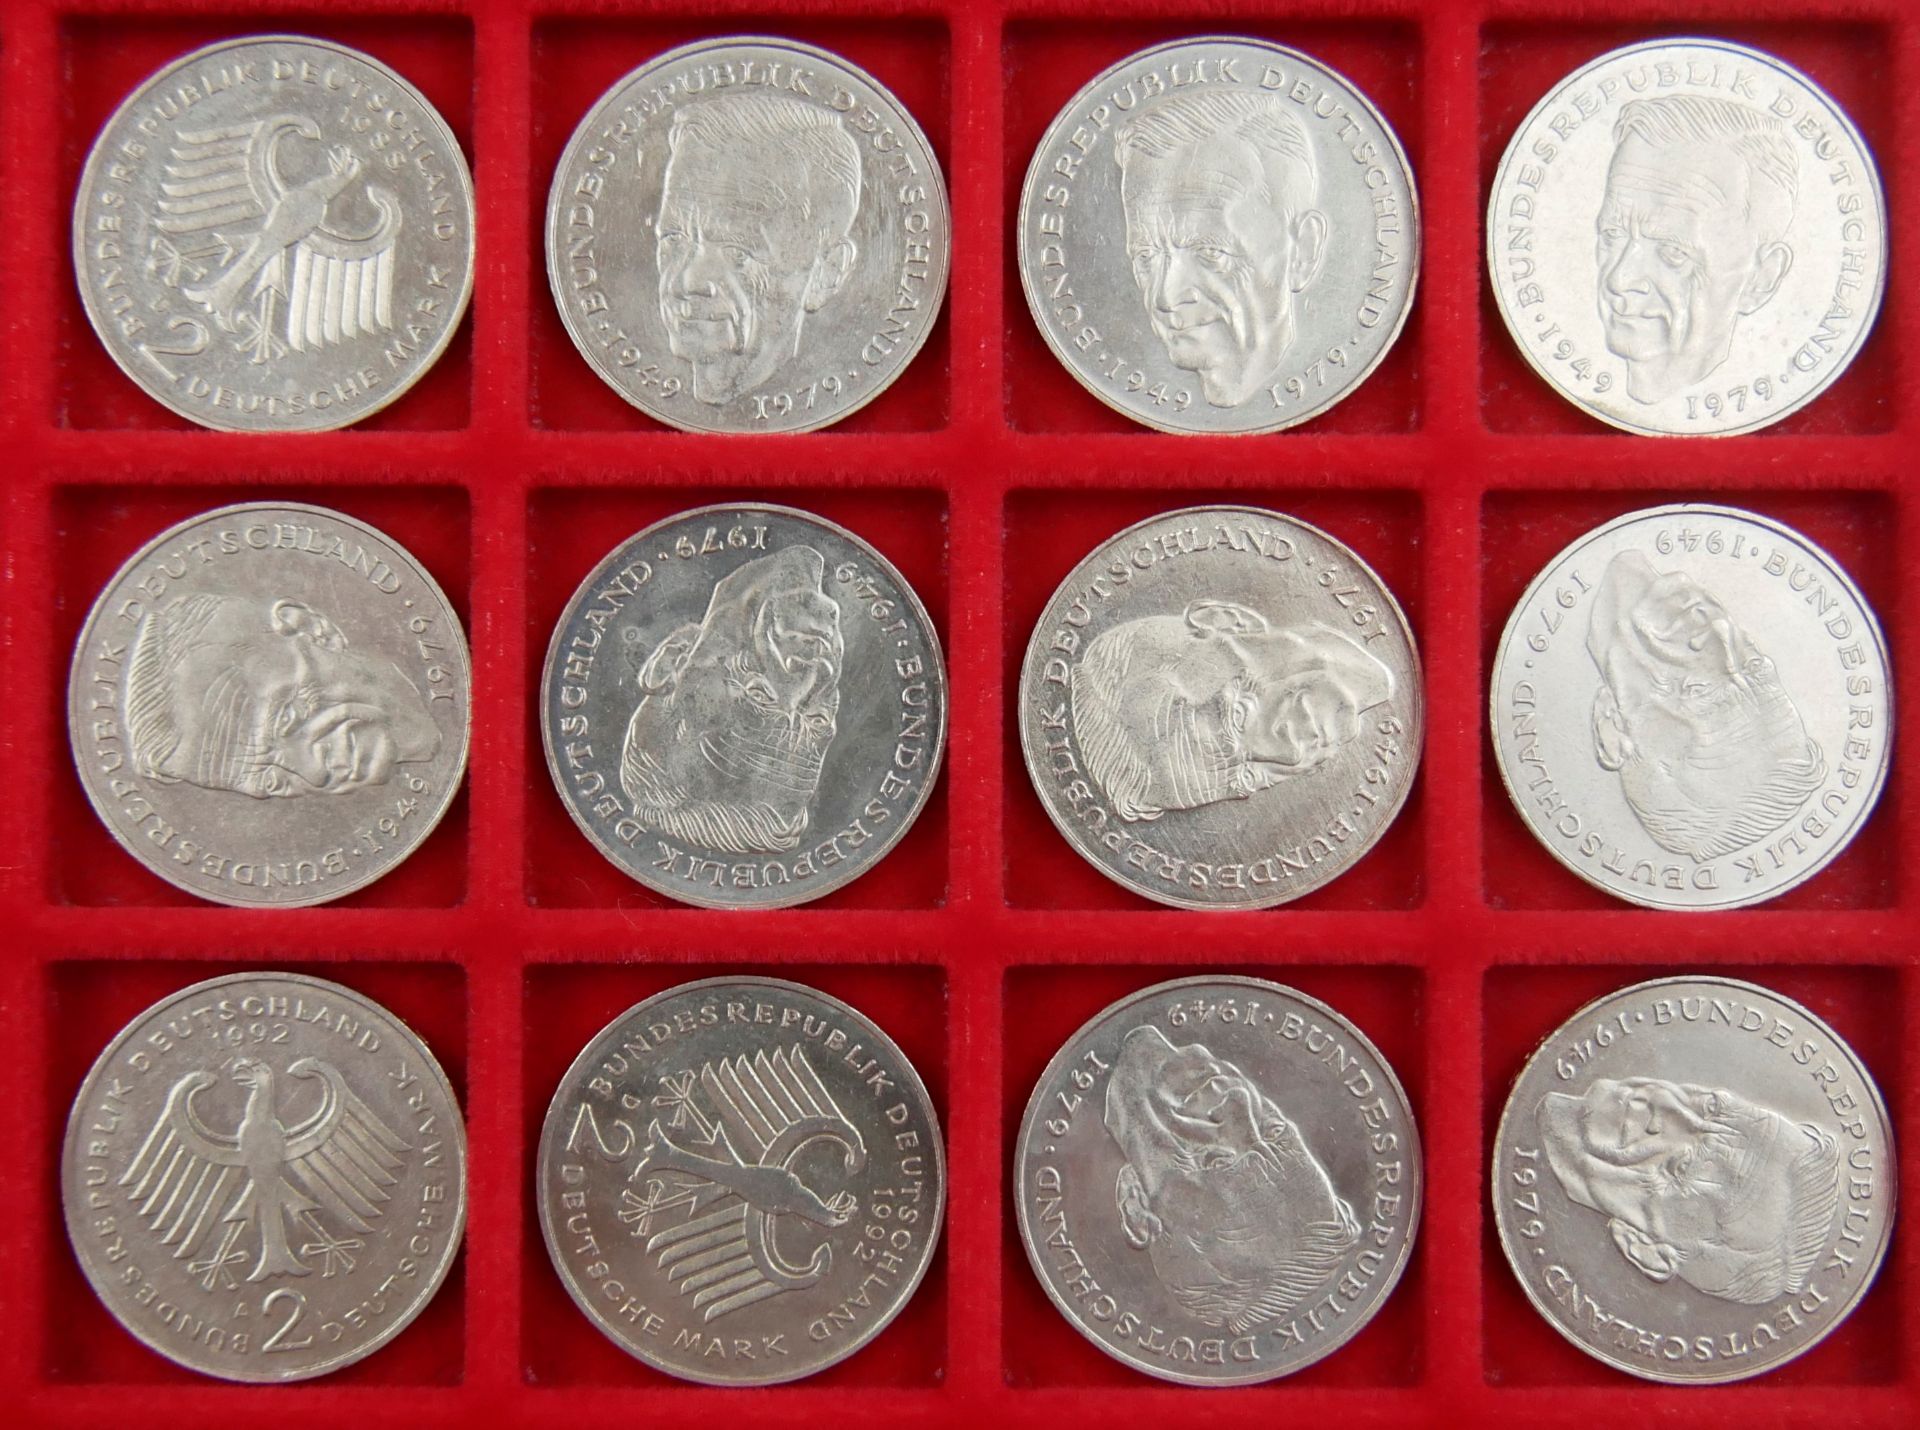 Konvolut von 2 deutsche Mark Münzen, insgesamt 26 Stück. - Bild 2 aus 2